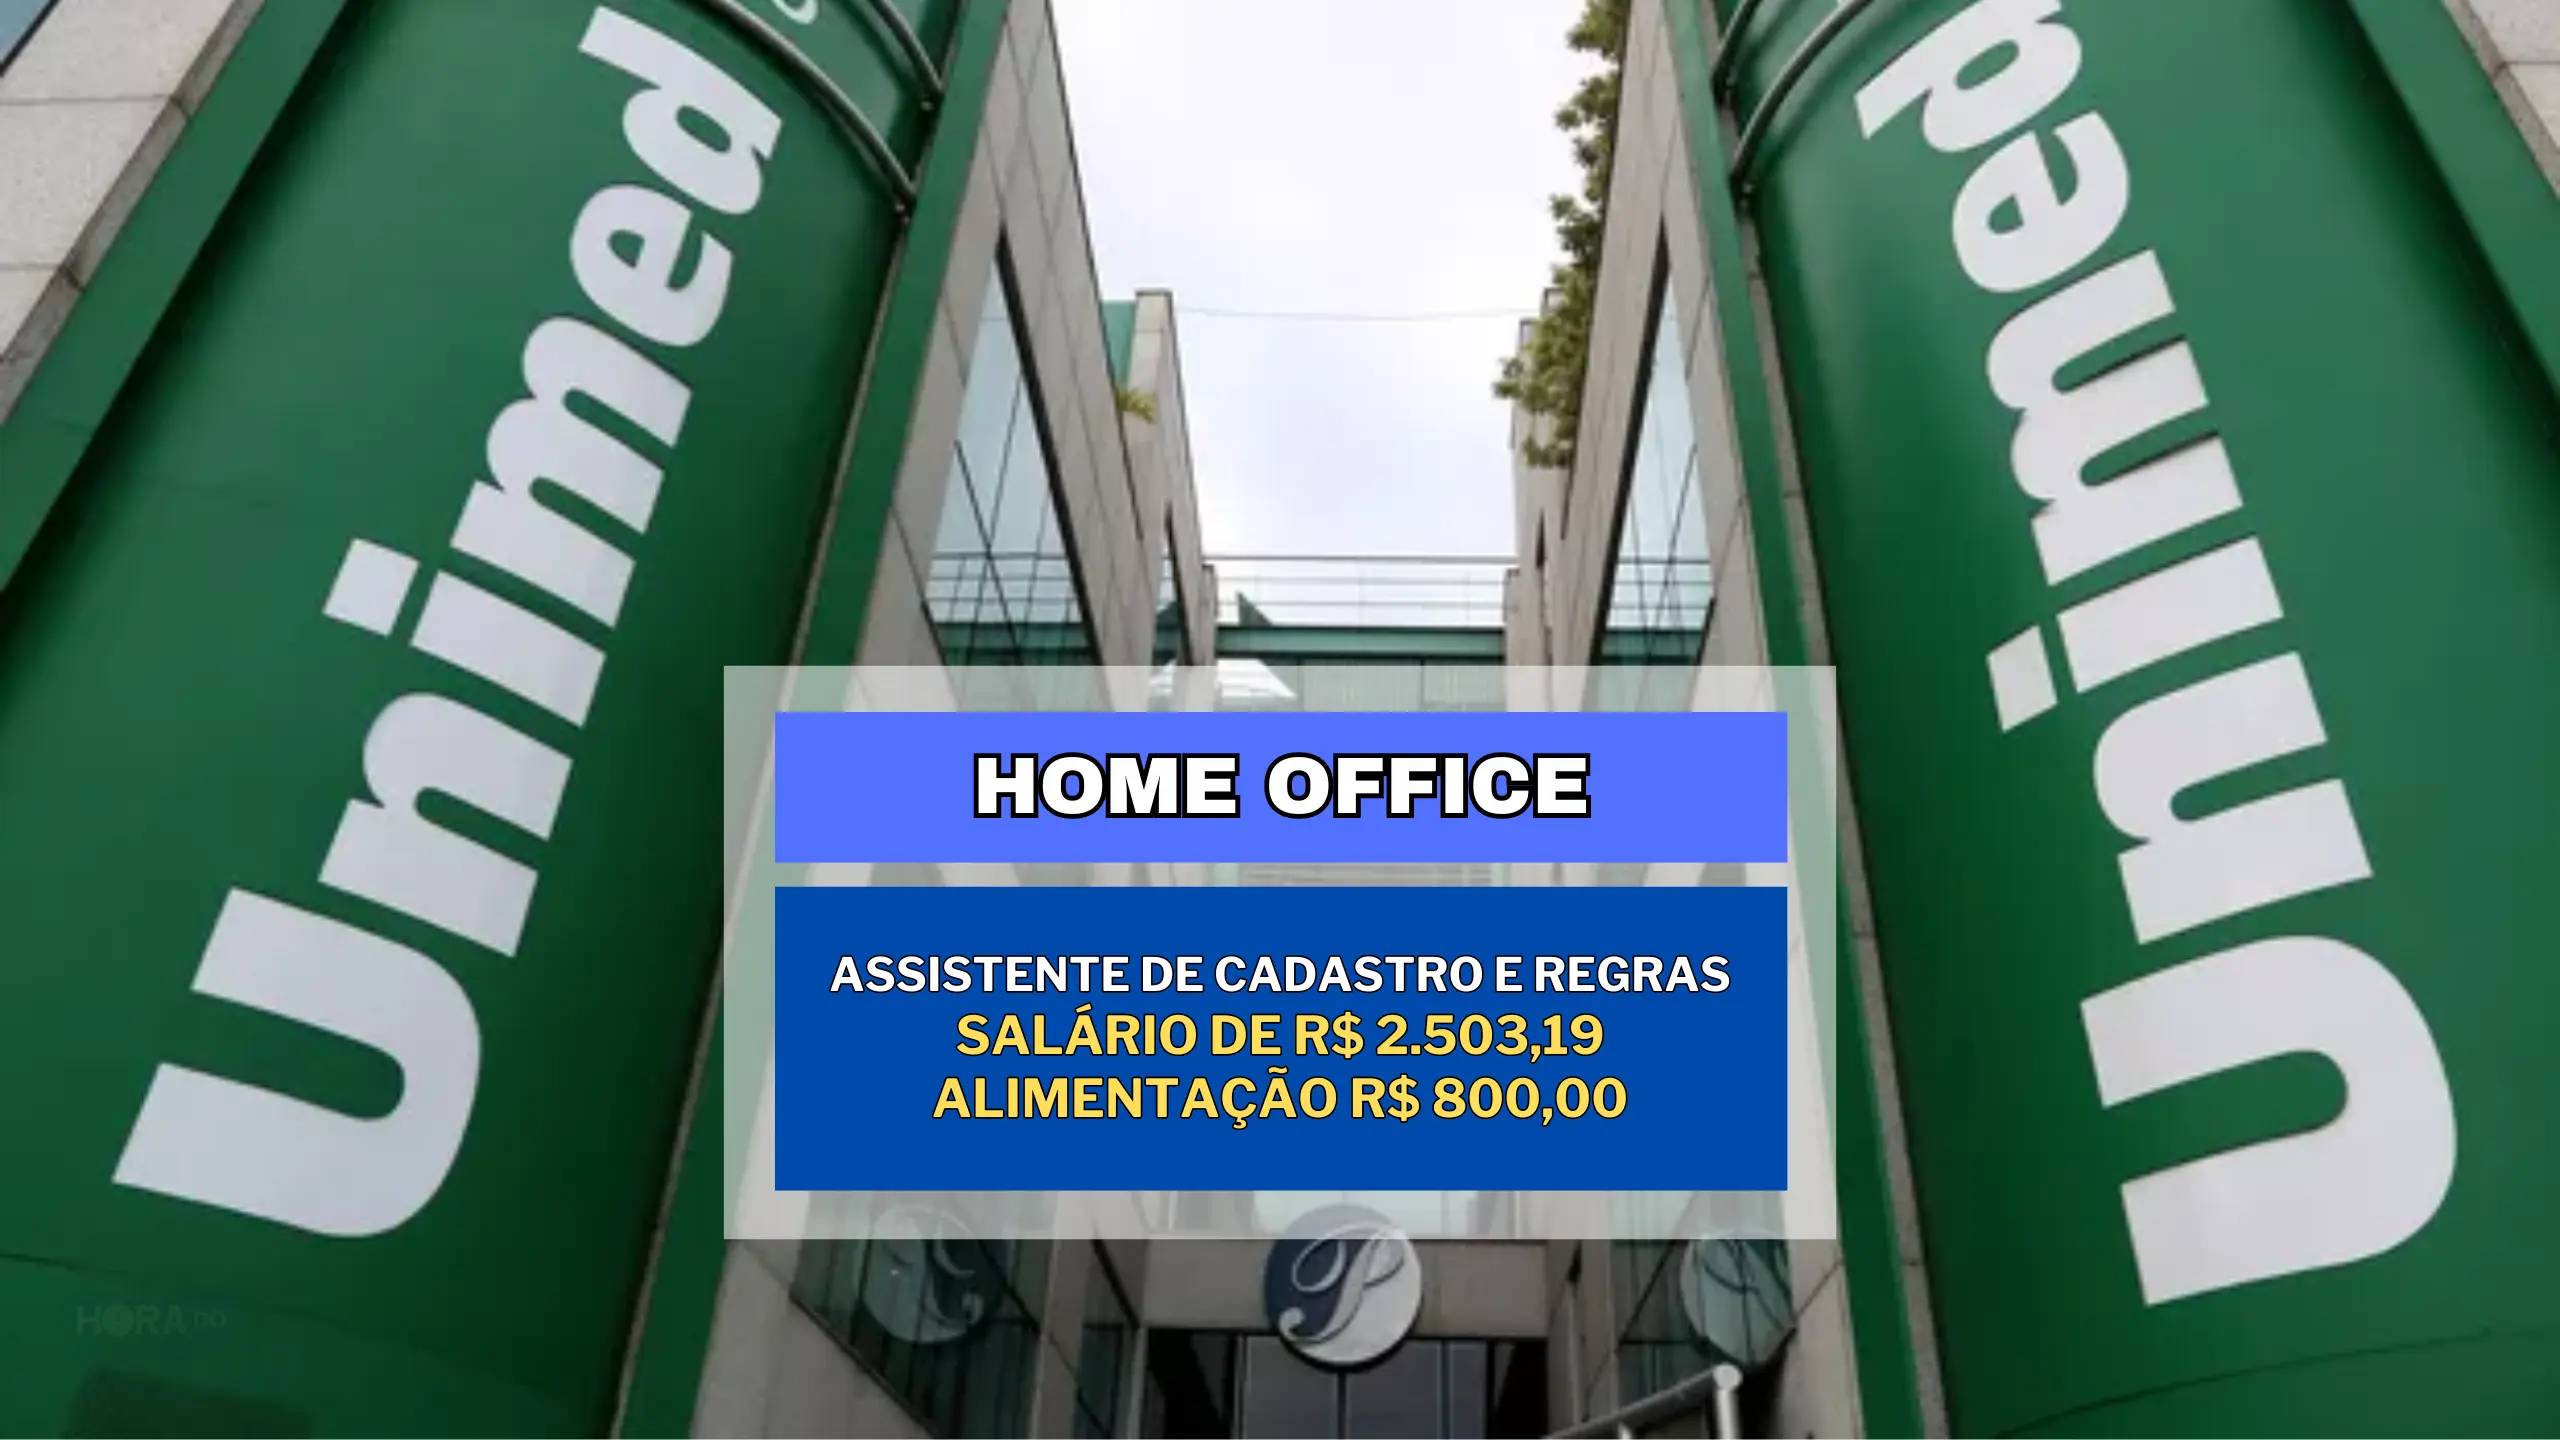 Sem experiência! Unimed acaba de anunciar vaga HOME OFFICE para Assistente de Cadastro e Regras com salário de R$ 2.503,19 e Alimentação R$ 800,00